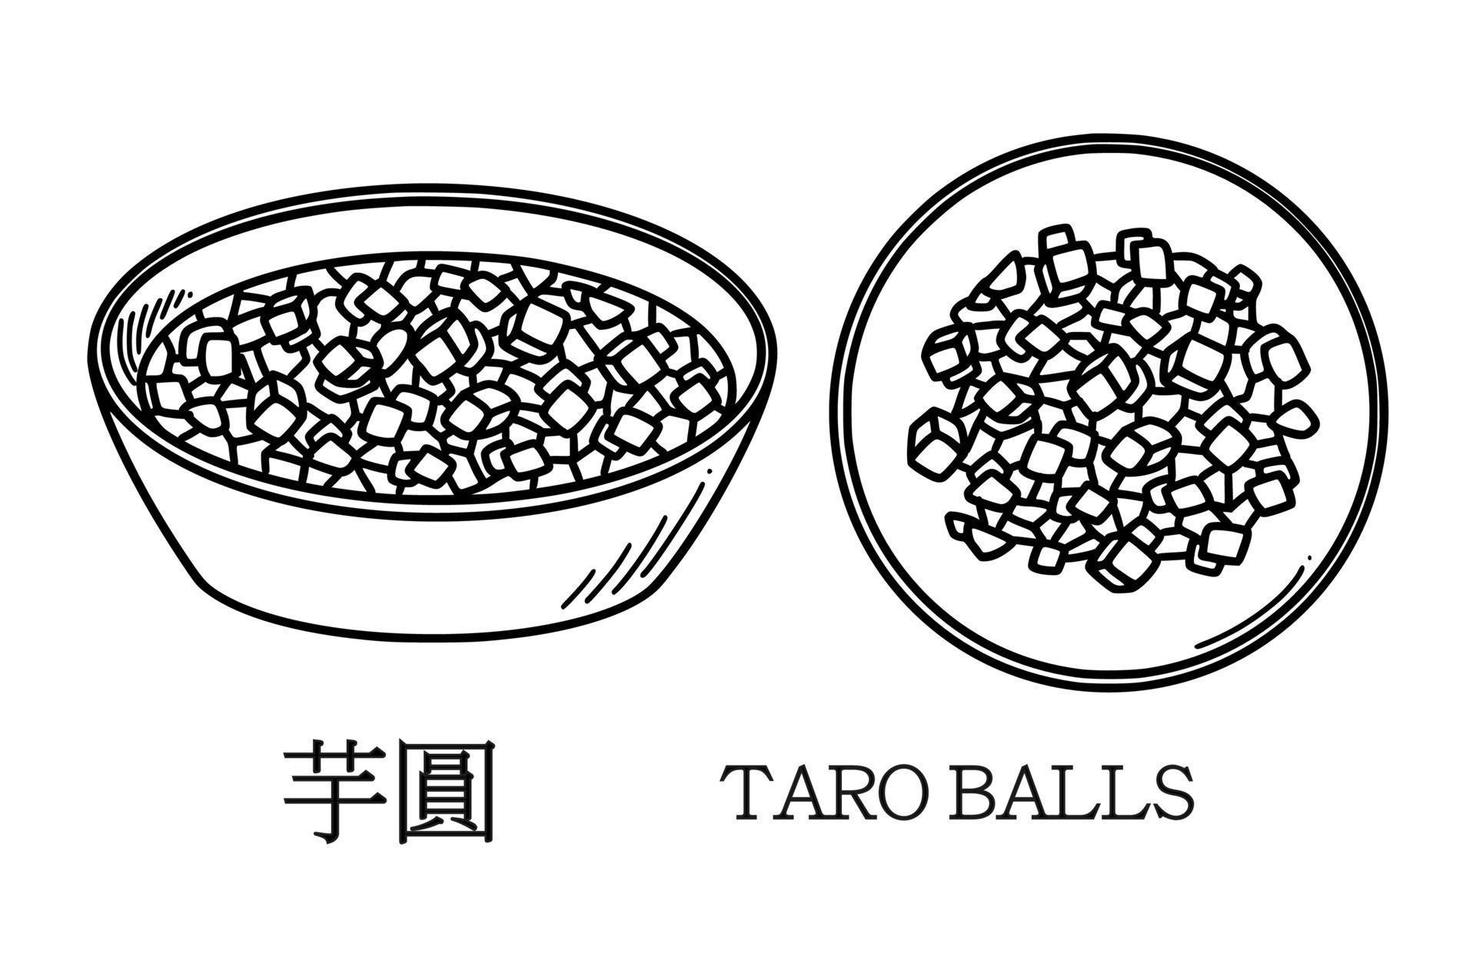 tradução da bola de taro chinesa. ilustração vetorial de sobremesa de bolas de taro do ano novo chinês no estilo doodle. vetor